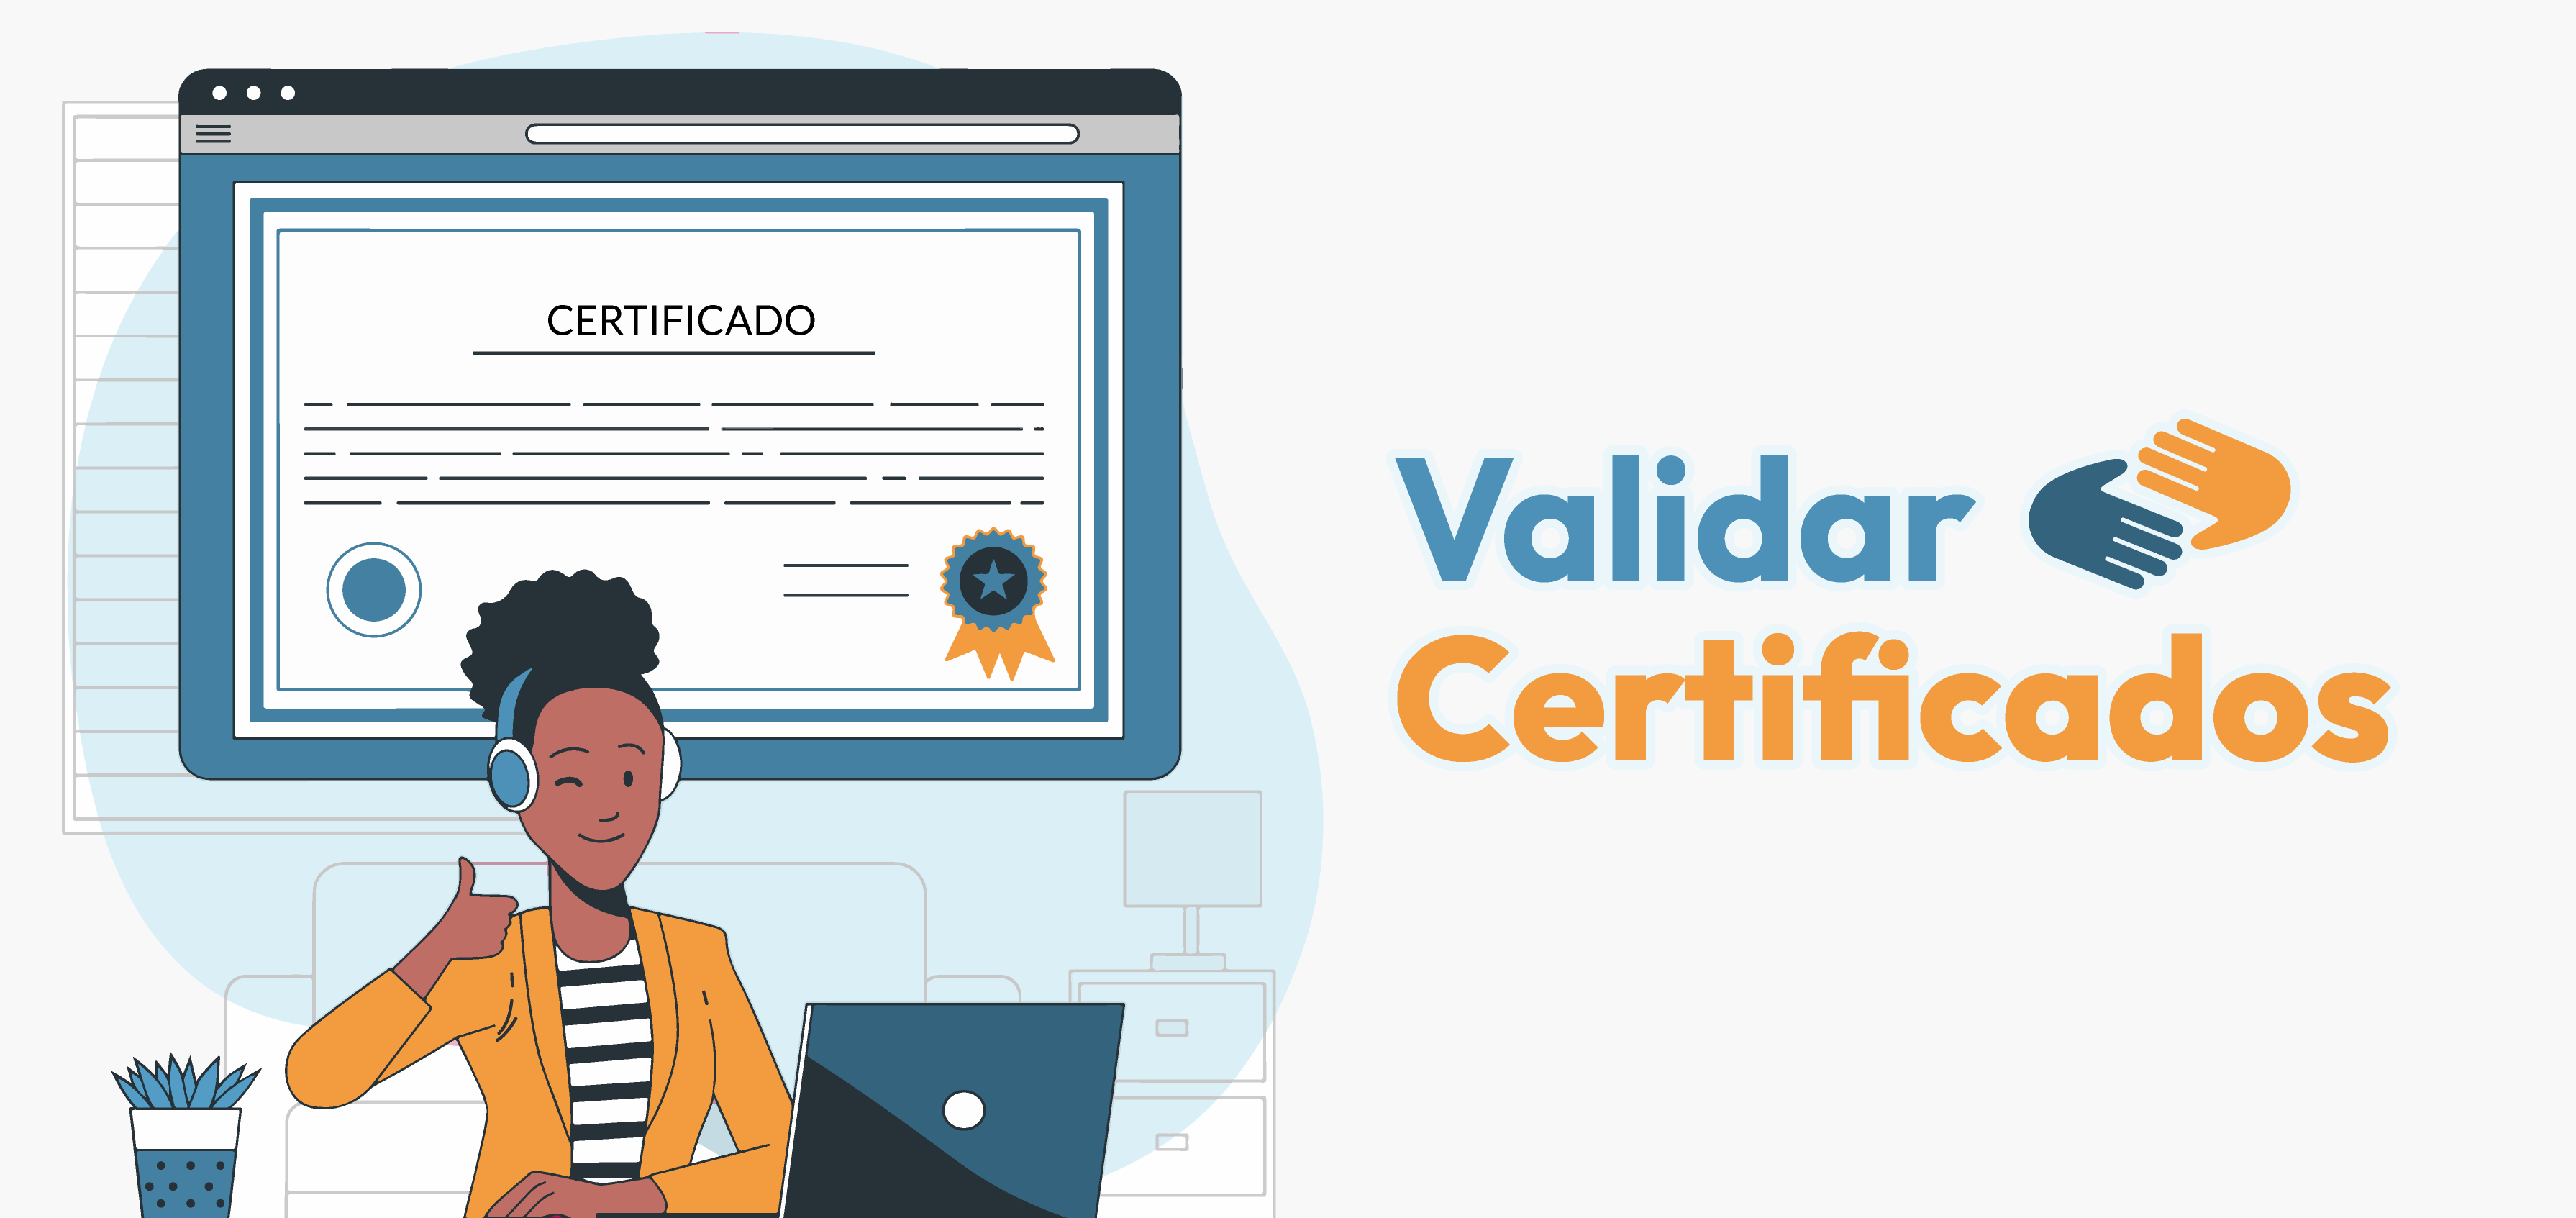 Validación de certificados - Inicio